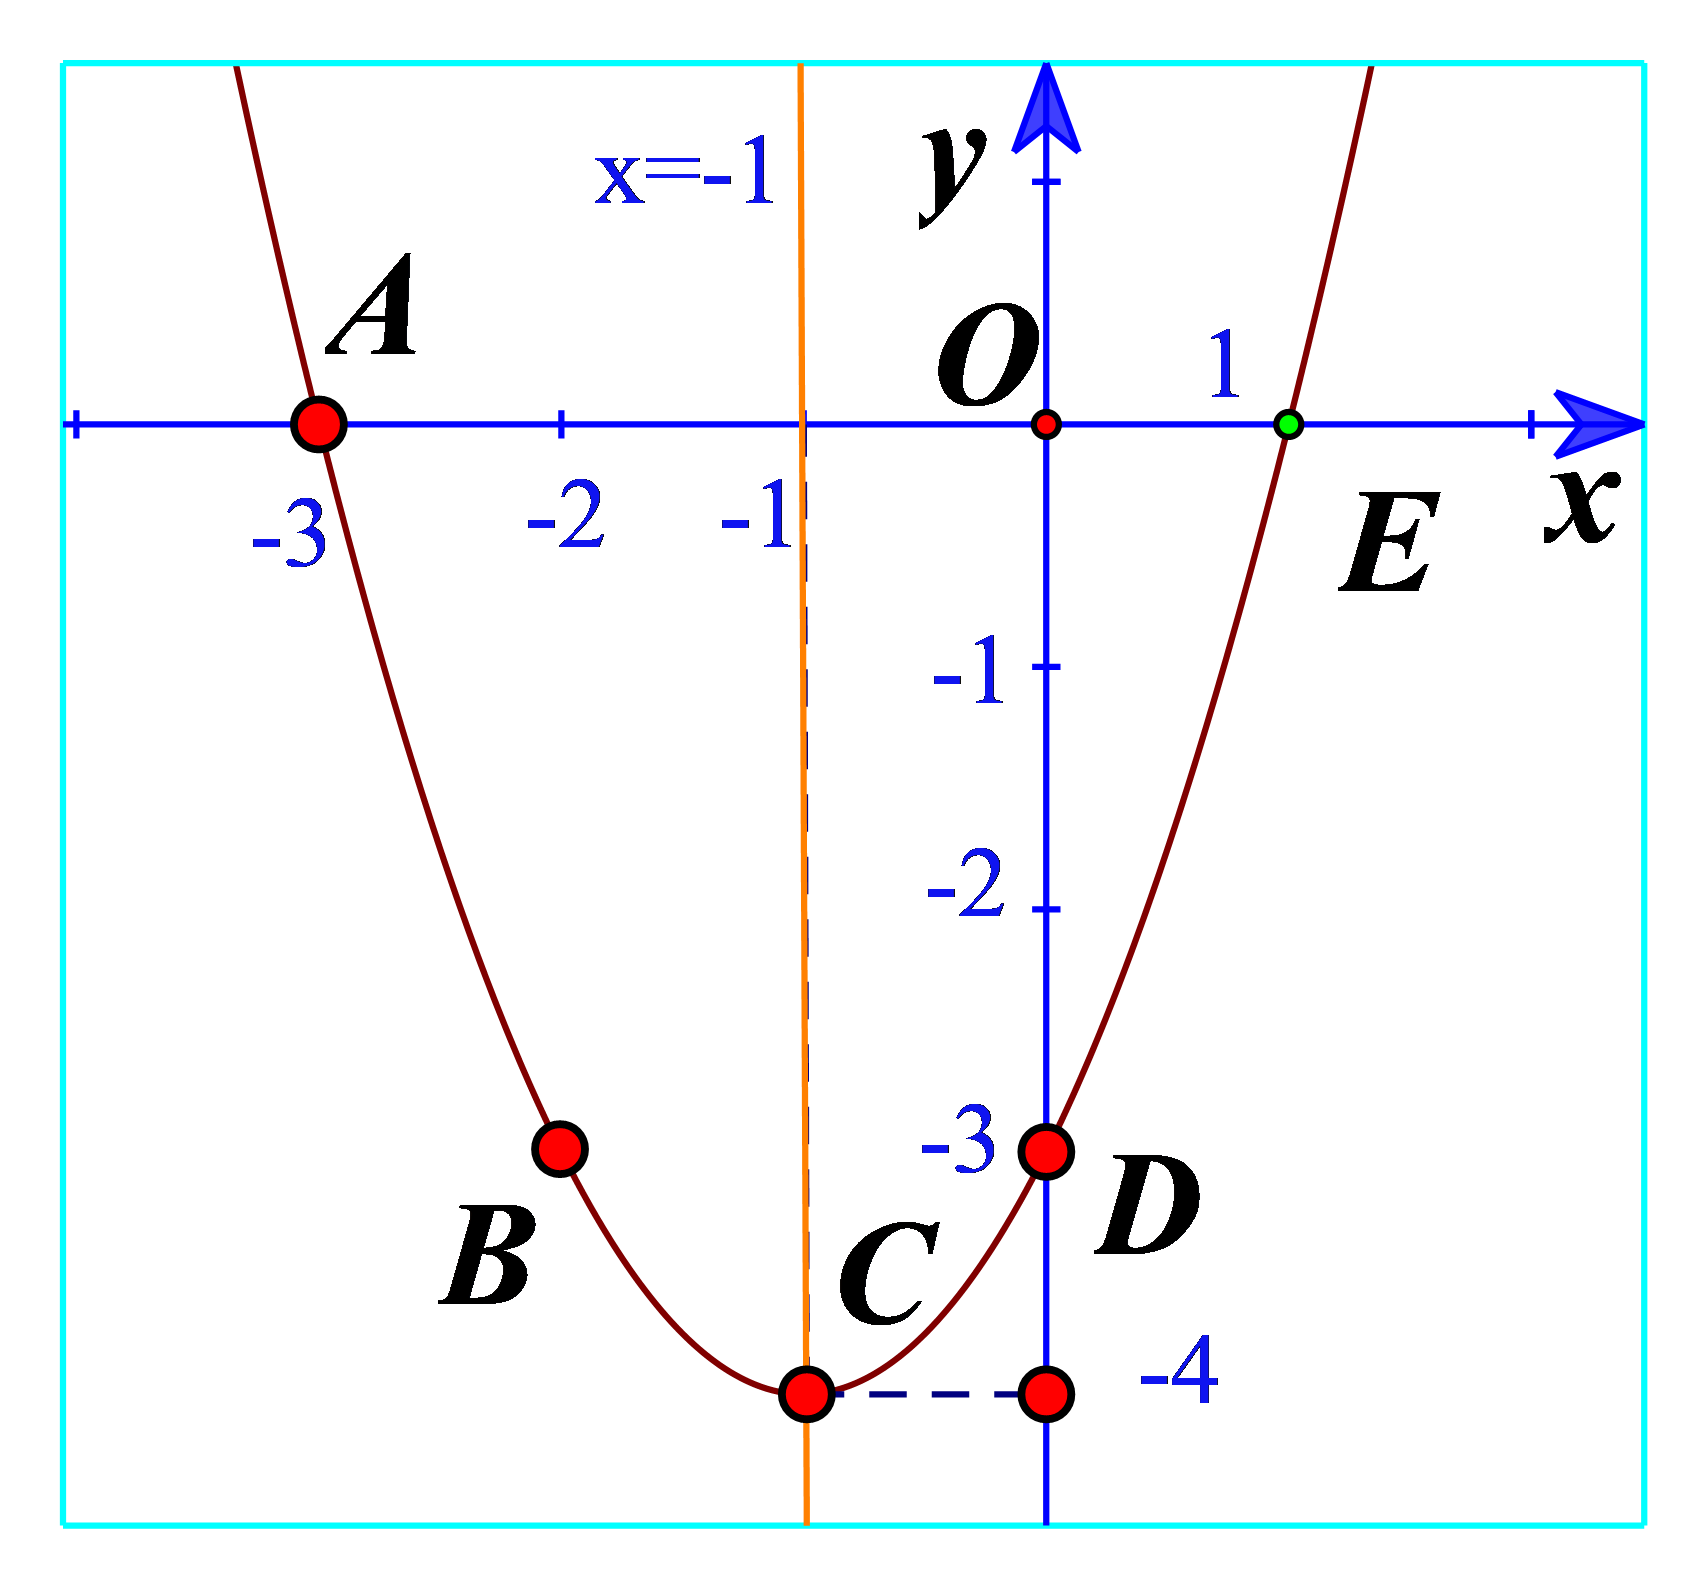 Đường parabol được biết đến là một trong những đường cong đẹp nhất trong toán học và được ứng dụng trong nhiều lĩnh vực khác nhau. Hãy cùng xem hình ảnh để khám phá tất cả các tính chất của parabol.